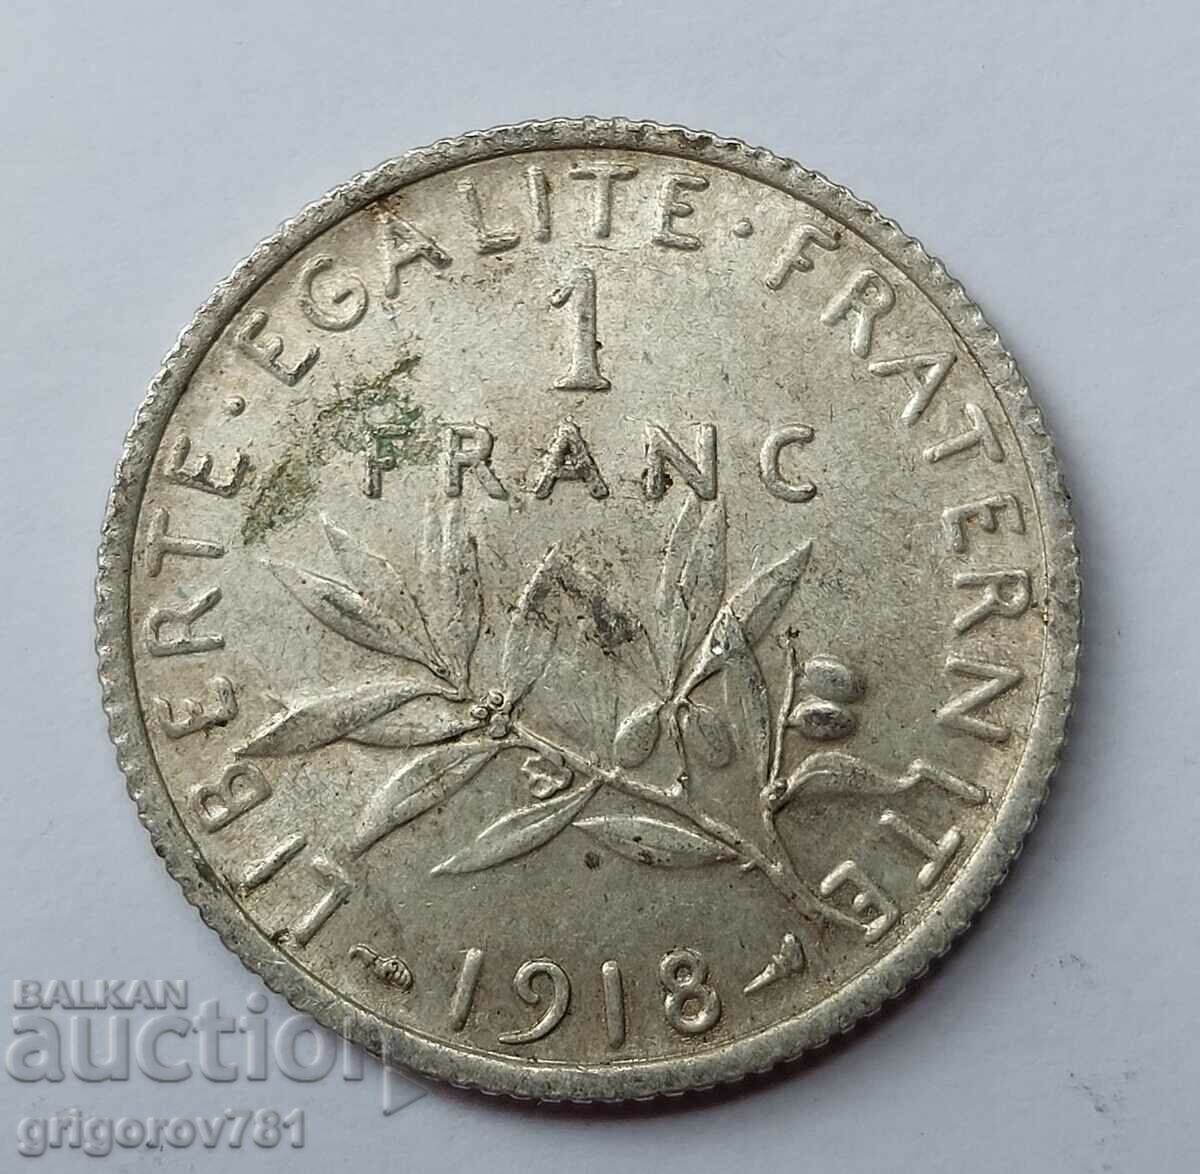 1 franc argint Franța 1918 - monedă de argint №22